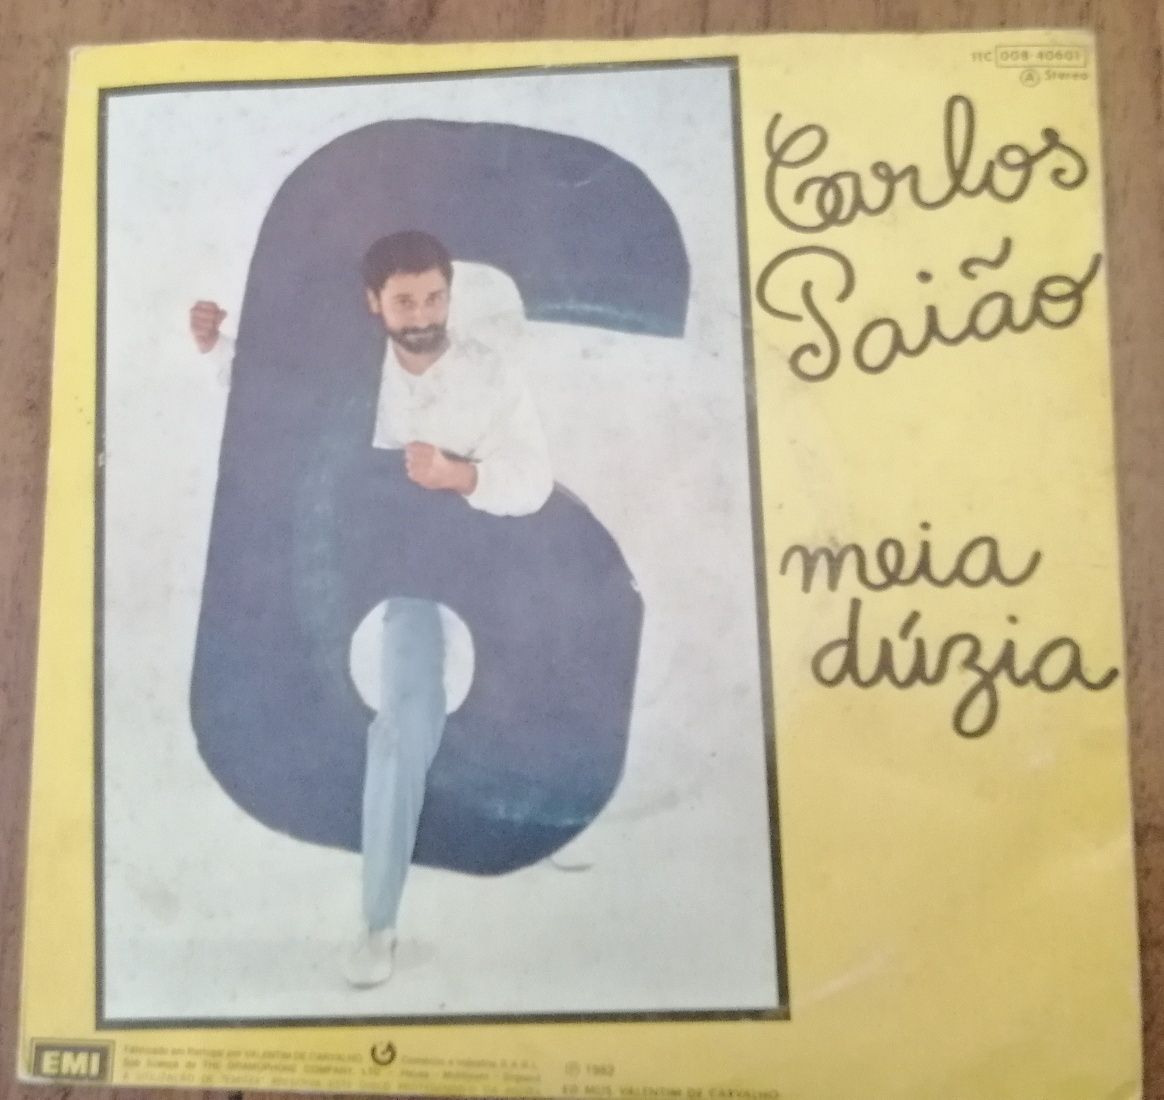 Singles música portuguesa